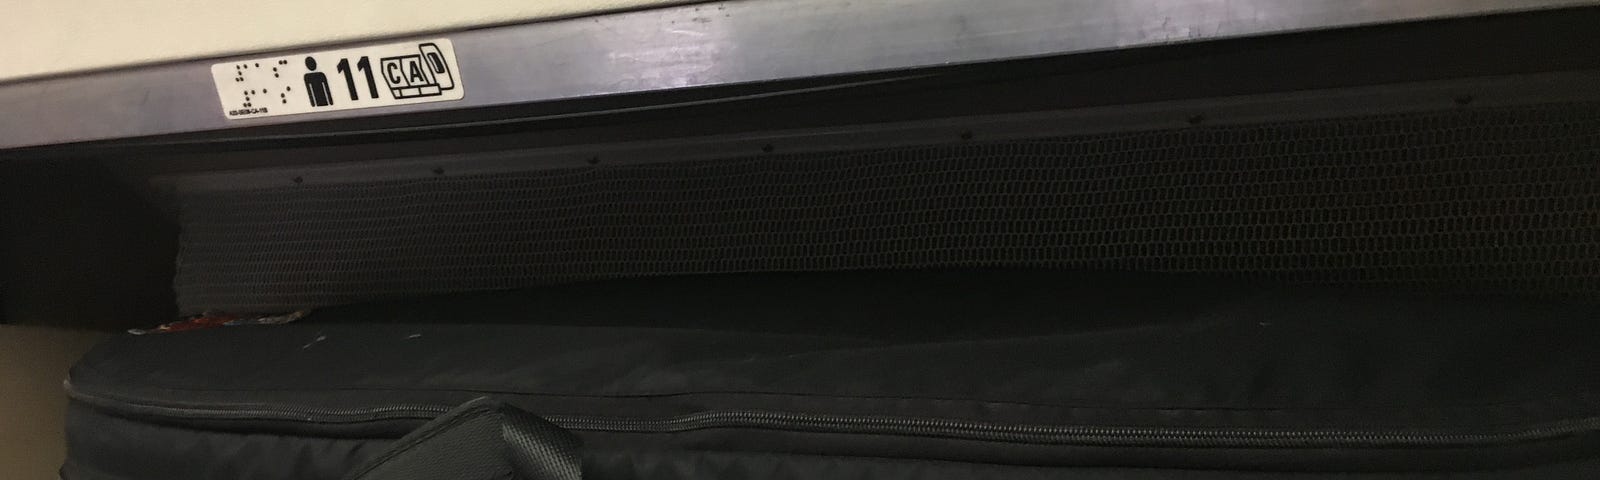 An instrument case inside an overhead bin on an airplane.